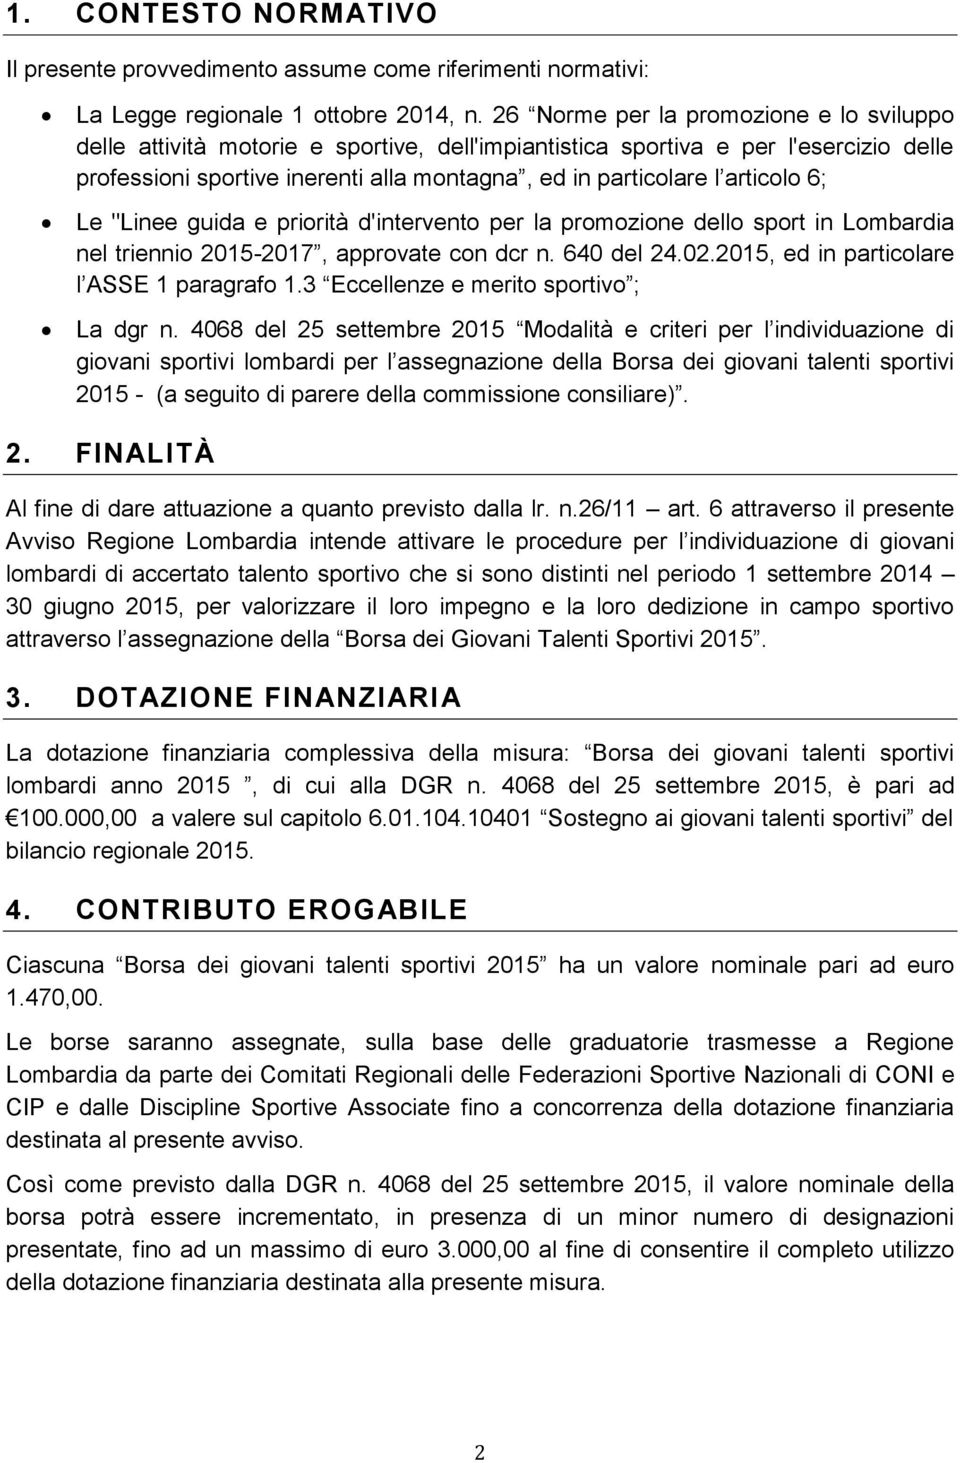 articolo 6; Le "Linee guida e priorità d'intervento per la promozione dello sport in Lombardia nel triennio 2015-2017, approvate con dcr n. 640 del 24.02.2015, ed in particolare l ASSE 1 paragrafo 1.